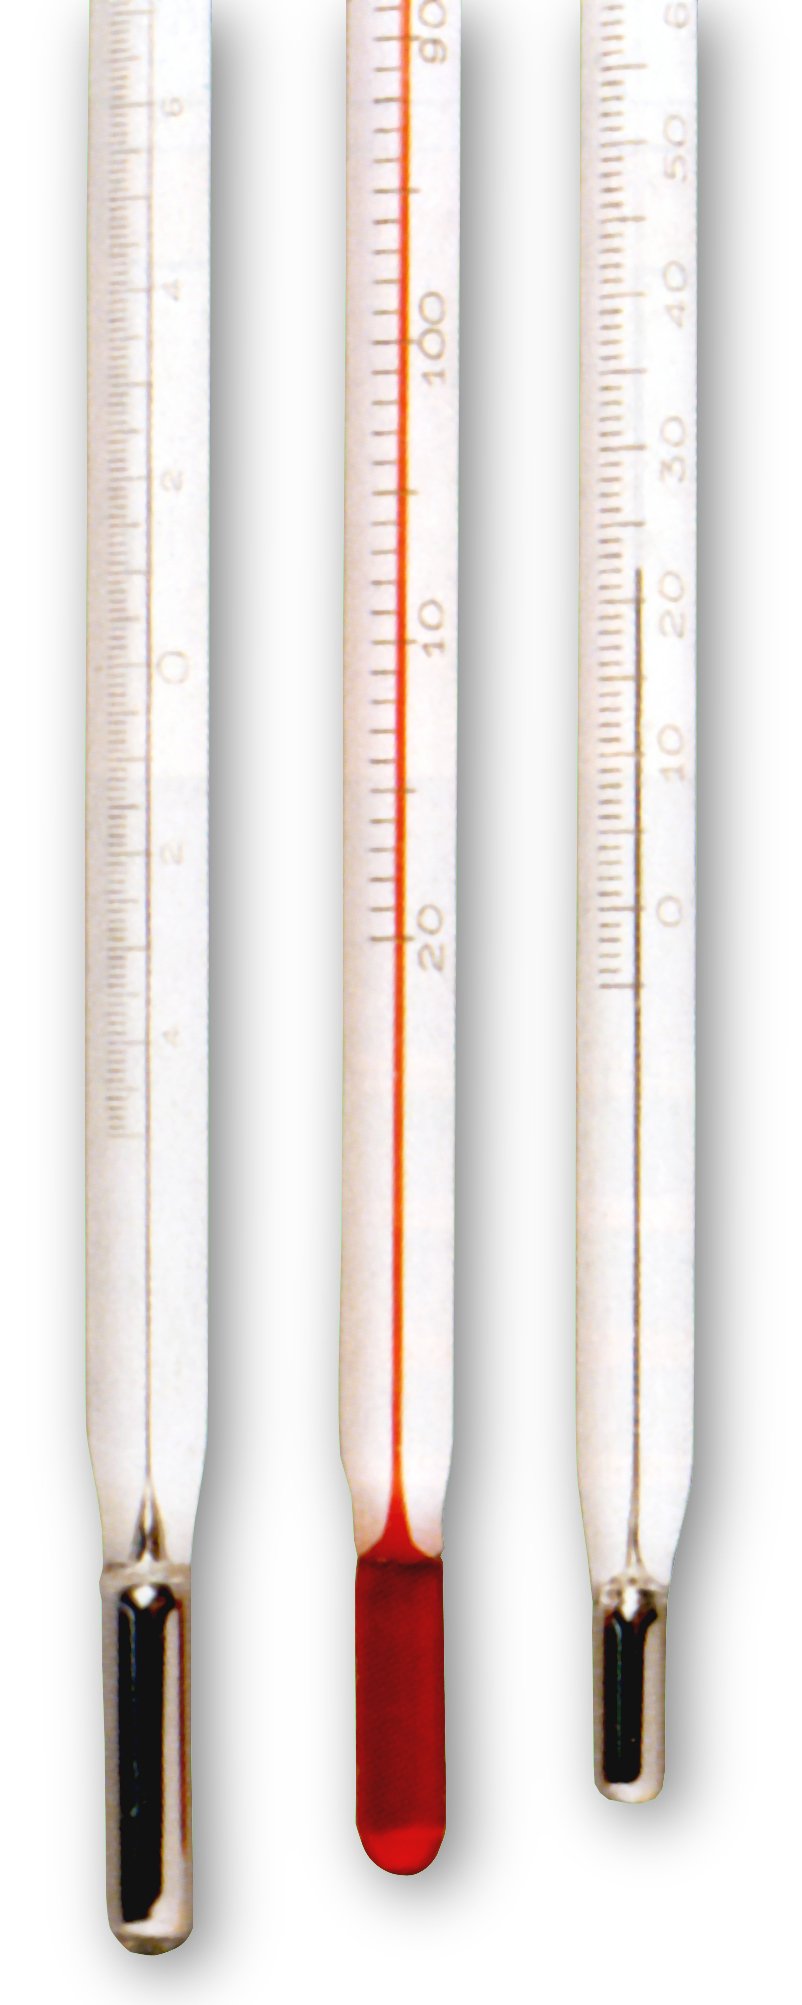 ميزان الحرارة (الثيرمومتر) – أجهزة القياس في مختبرات الكيمياء Thermometer